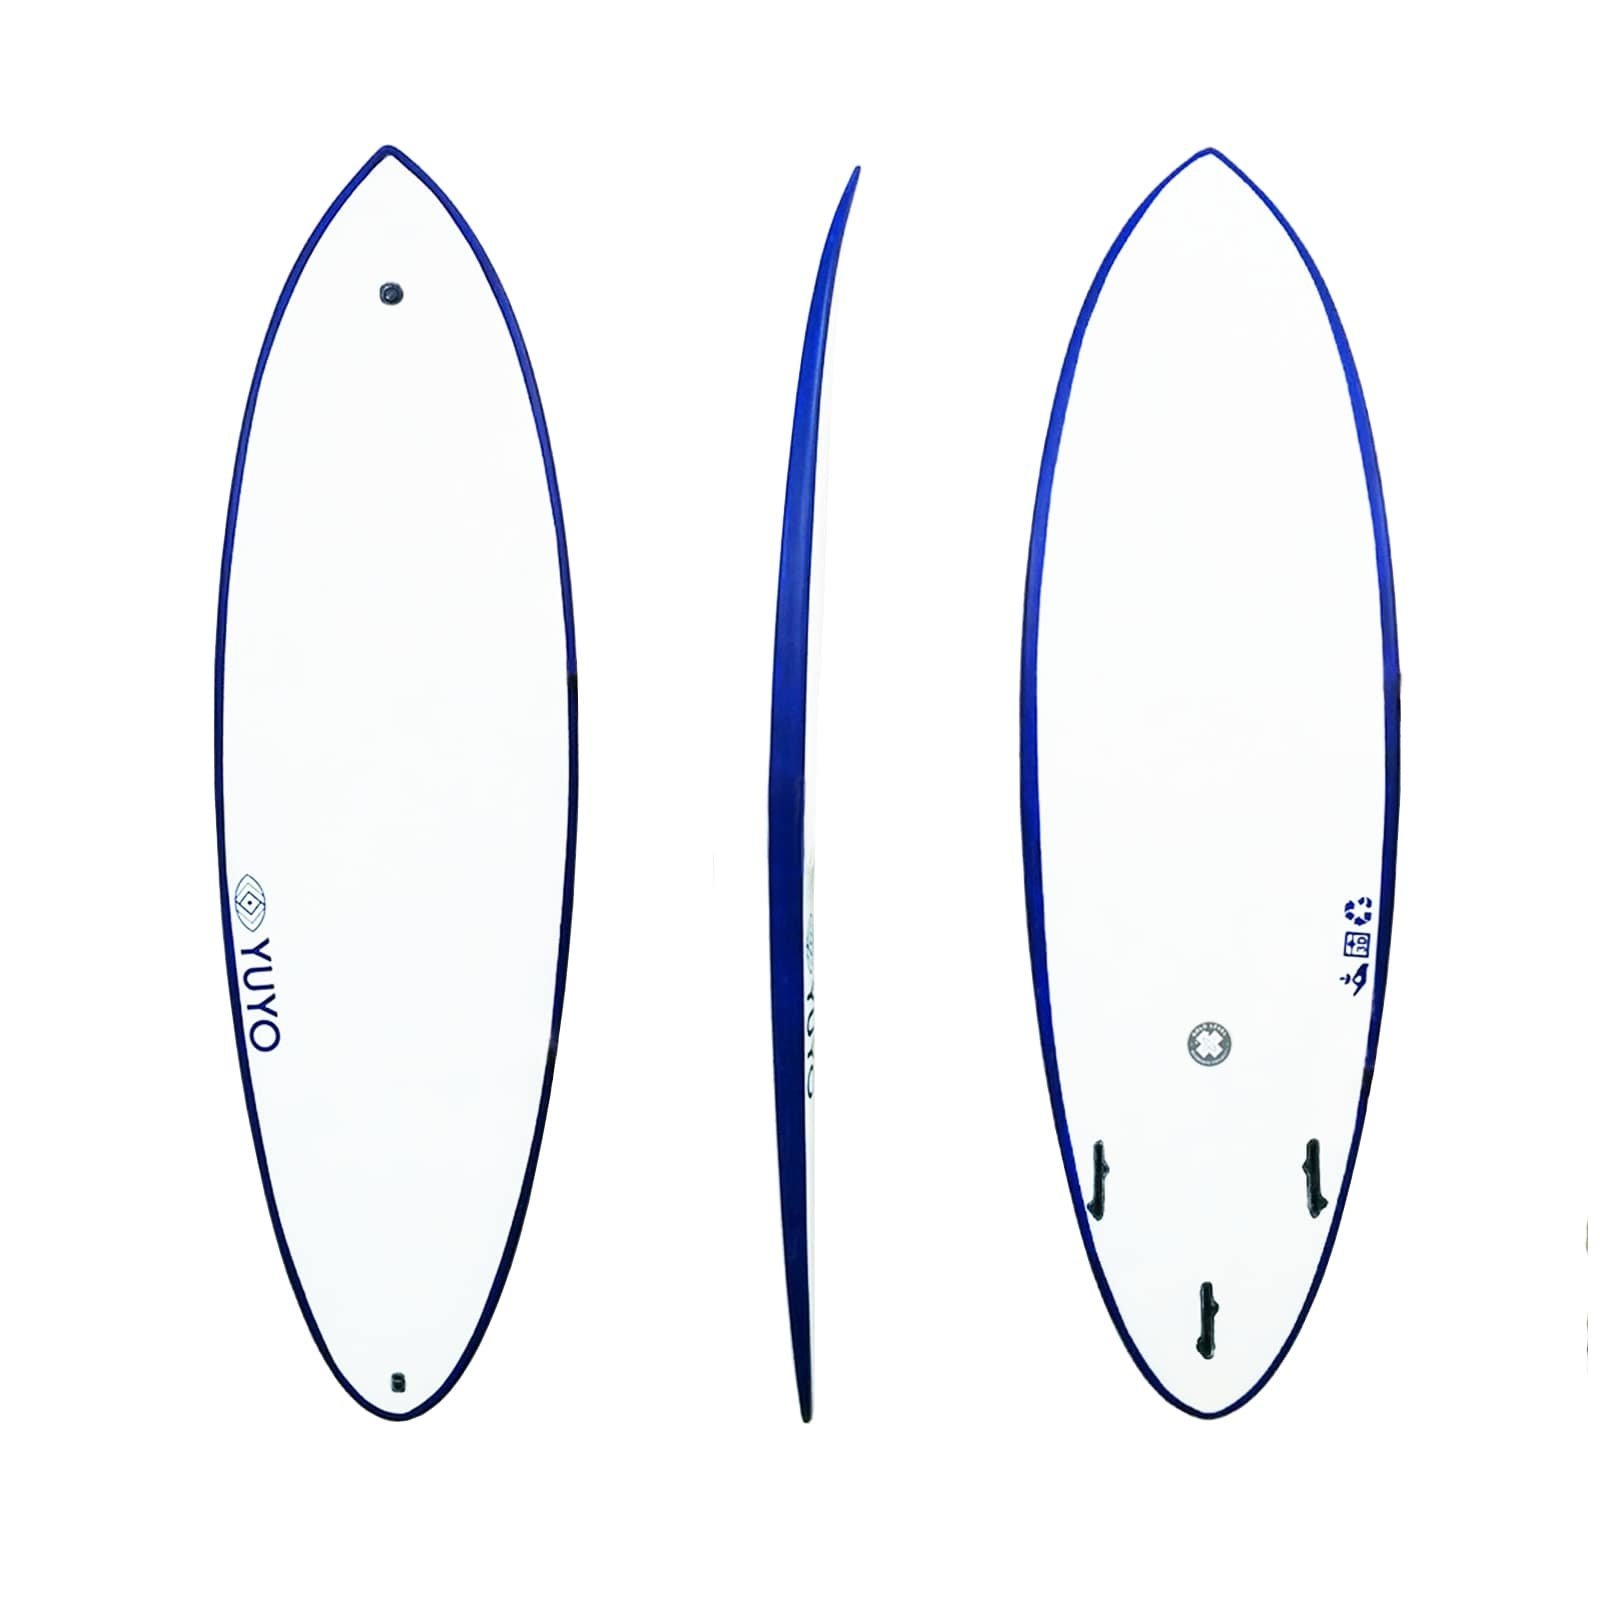 Surf ecoboard Saint pierre 5'6 hybride